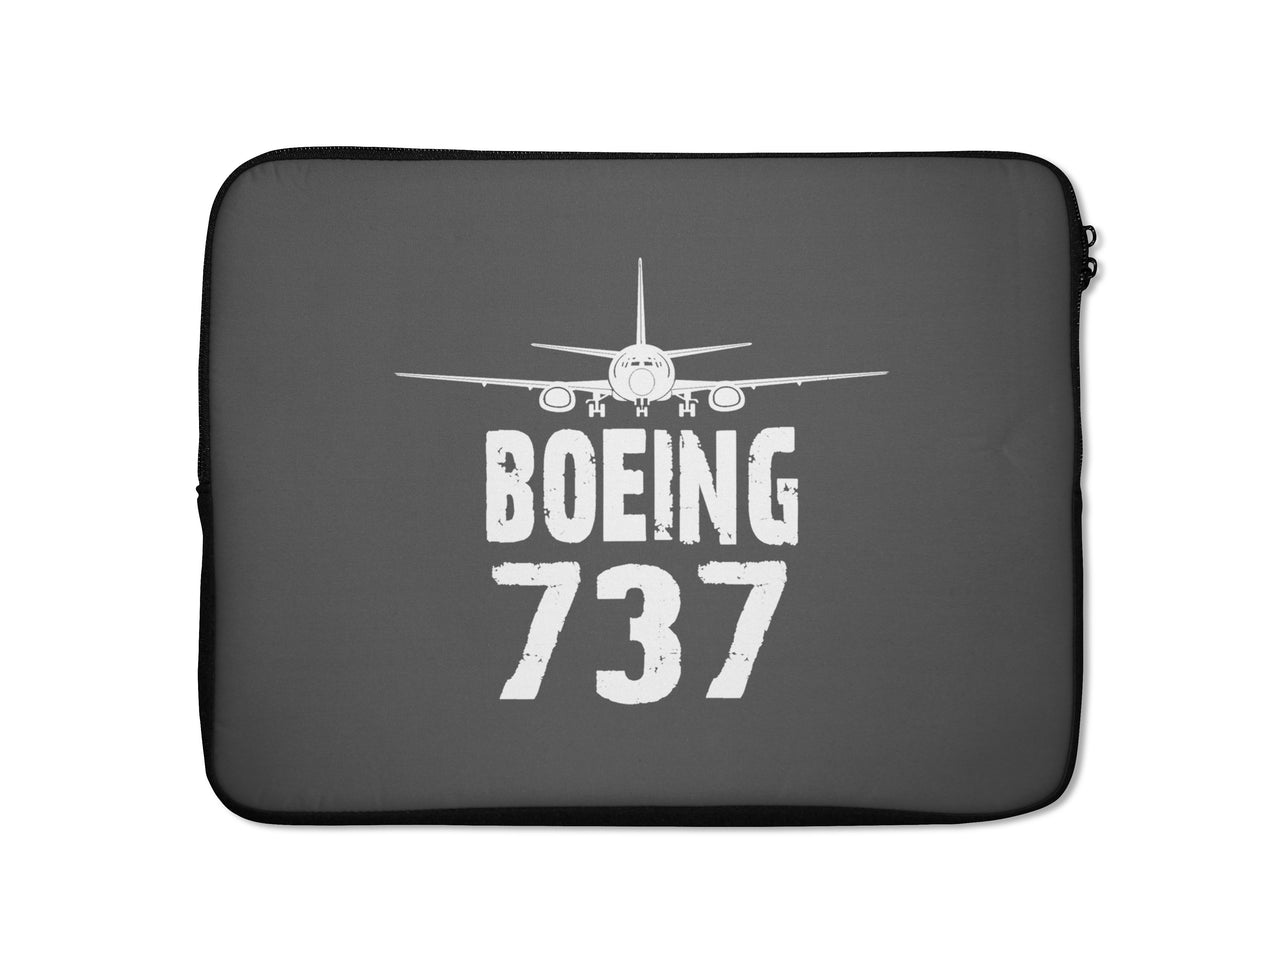 Boeing 737 & Plane Designed Laptop & Tablet Cases